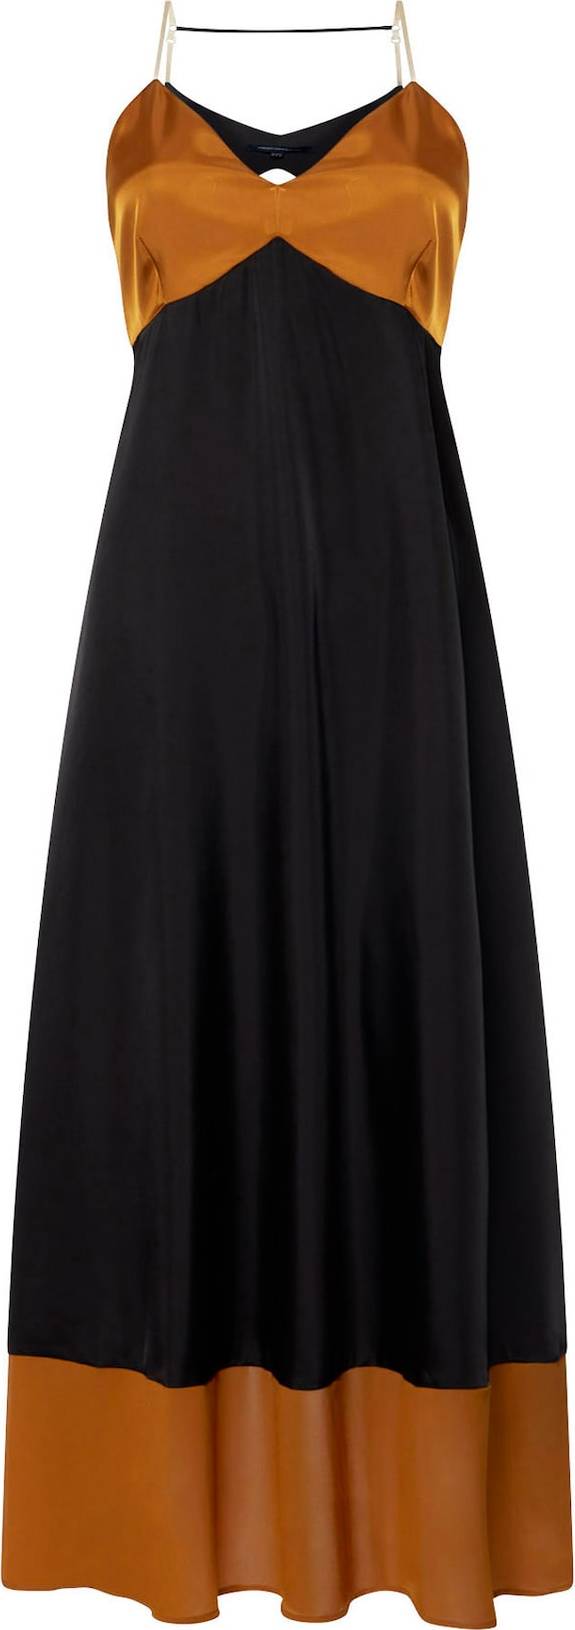 FRENCH CONNECTION Společenské šaty 'Elspeth' světle hnědá / černá / bílá